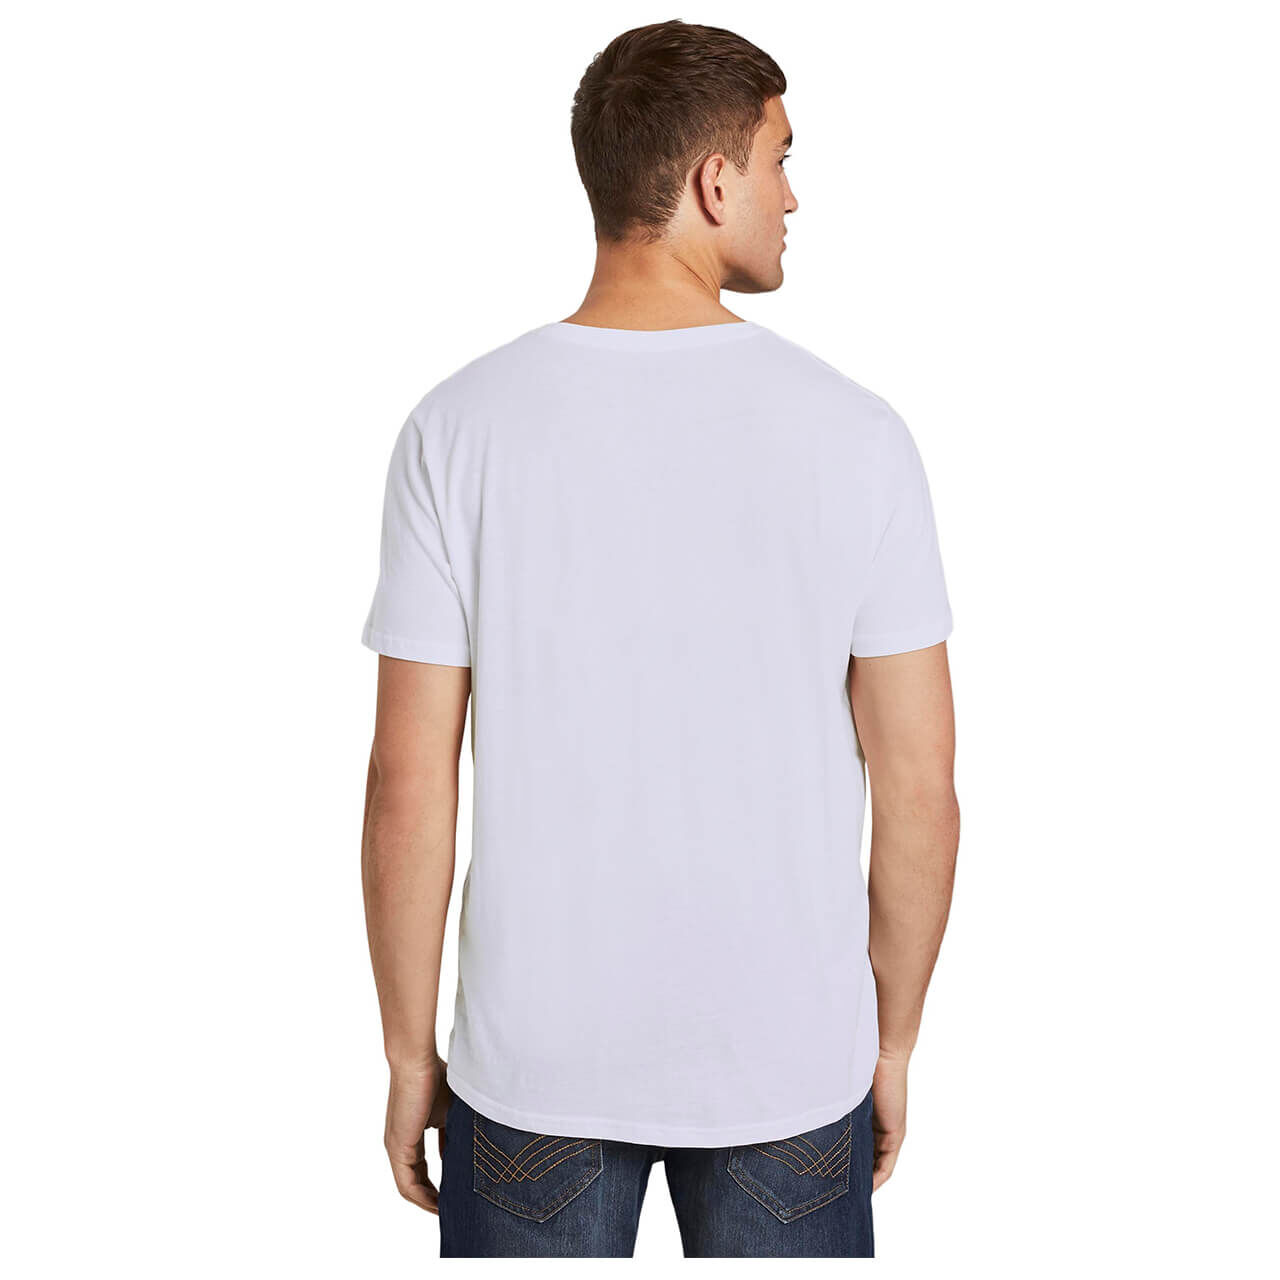 Tom Tailor T-Shirts für Herren in Weiß, FarbNr.: 20000